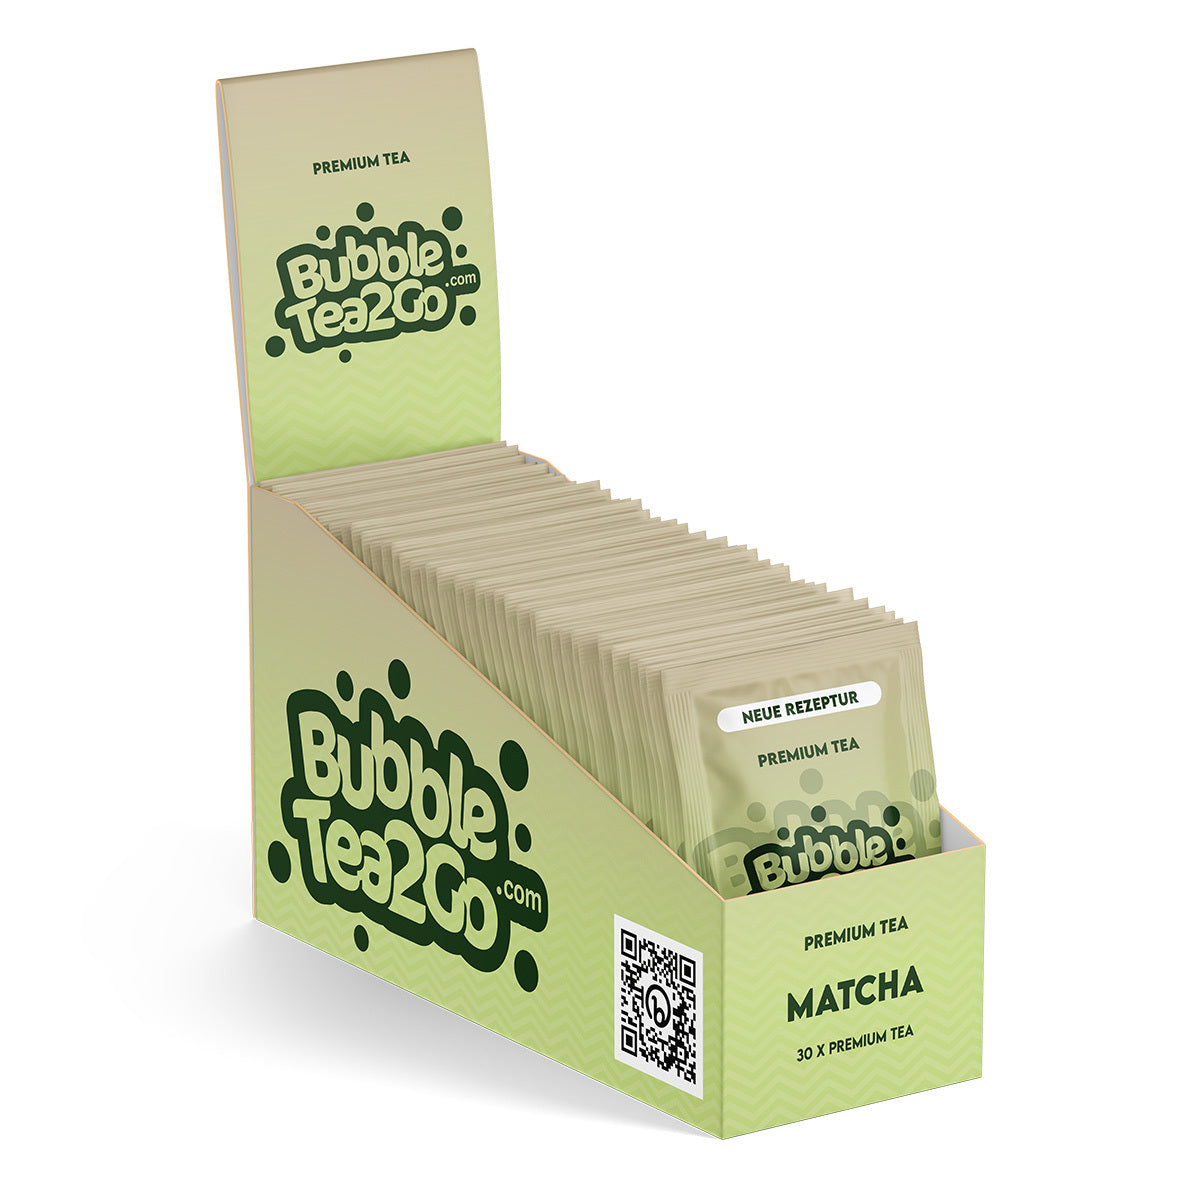 Premium tea advantage box - Matcha (30 pcs.)